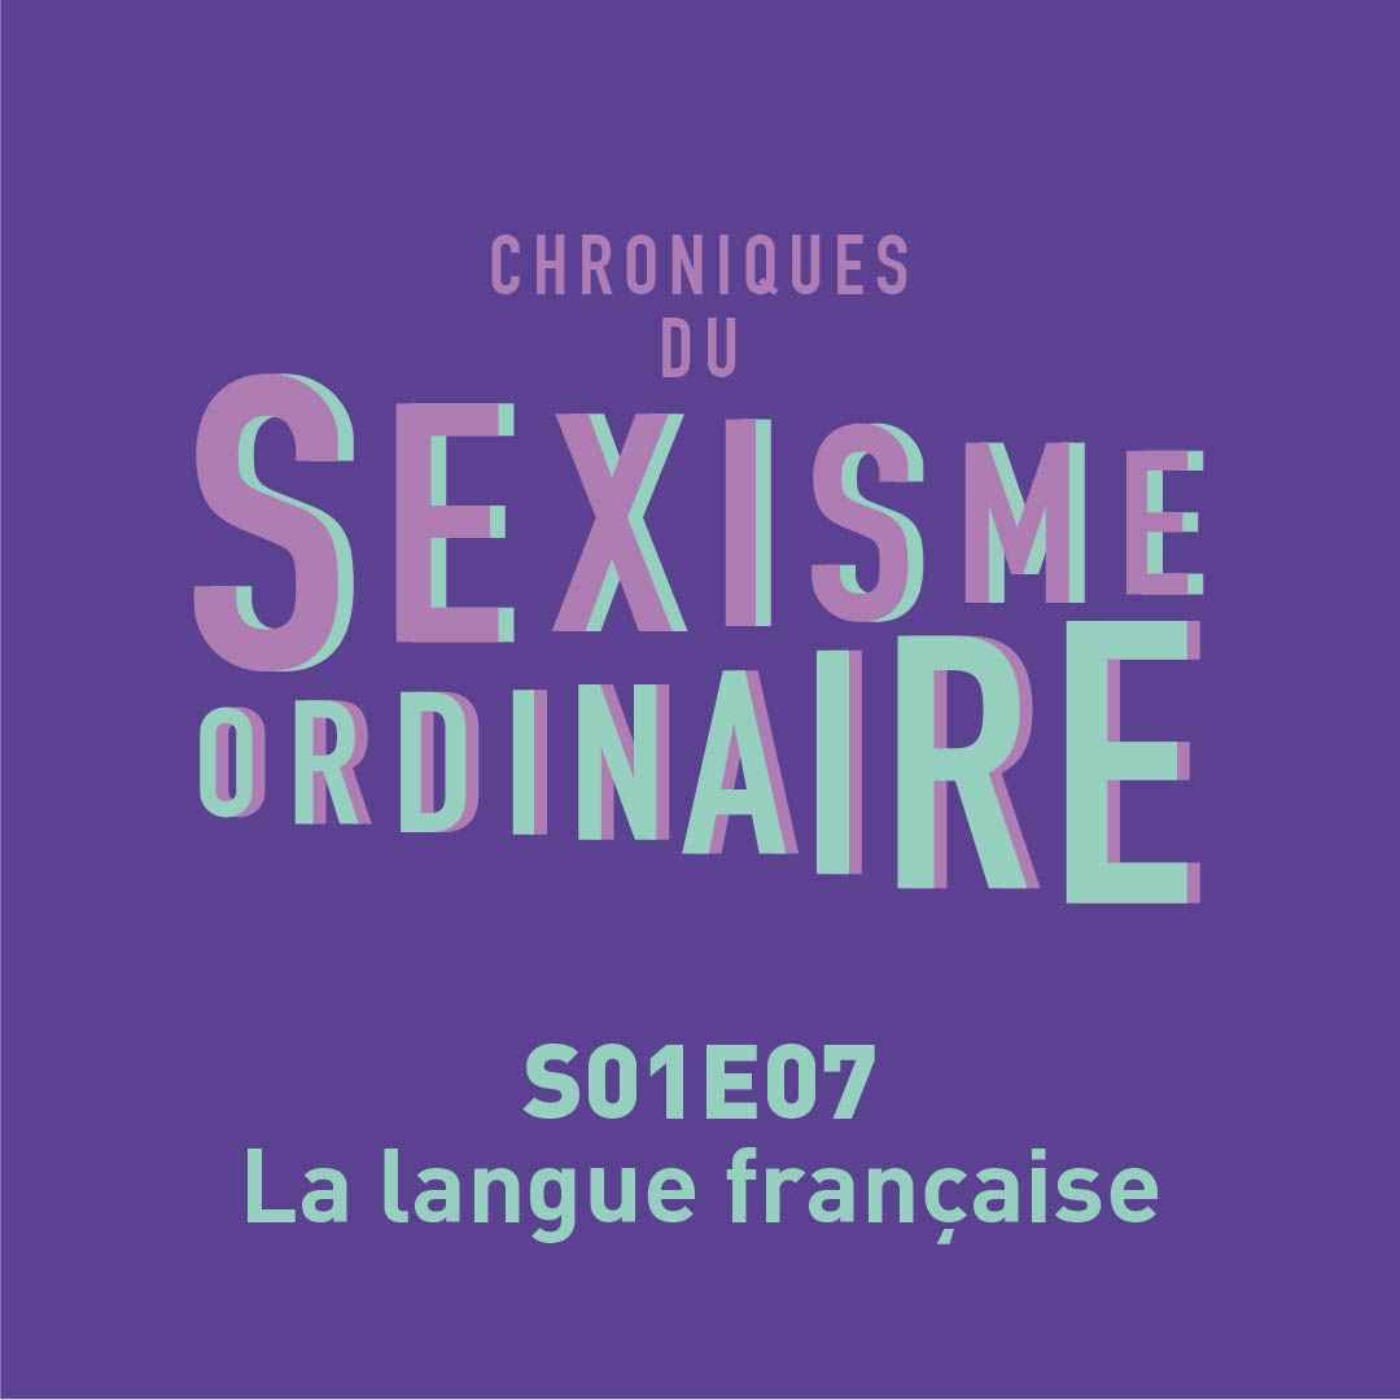 Sexisme dans la langue française